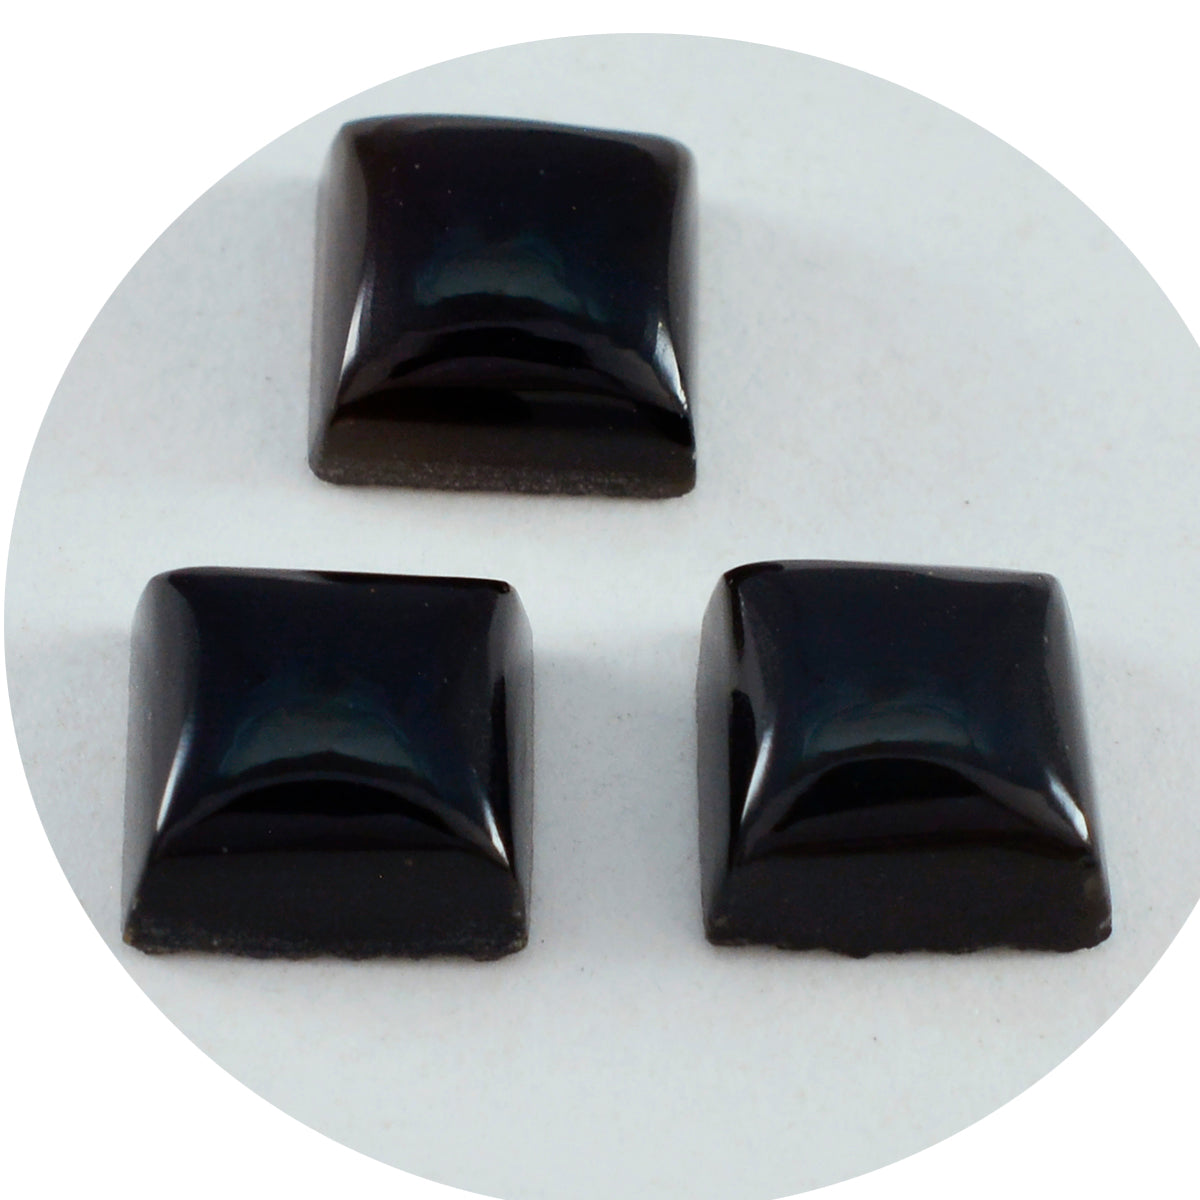 Riyogems 1PC Black Onyx Cabochon 14x14 mm Square Shape awesome Quality Gemstone